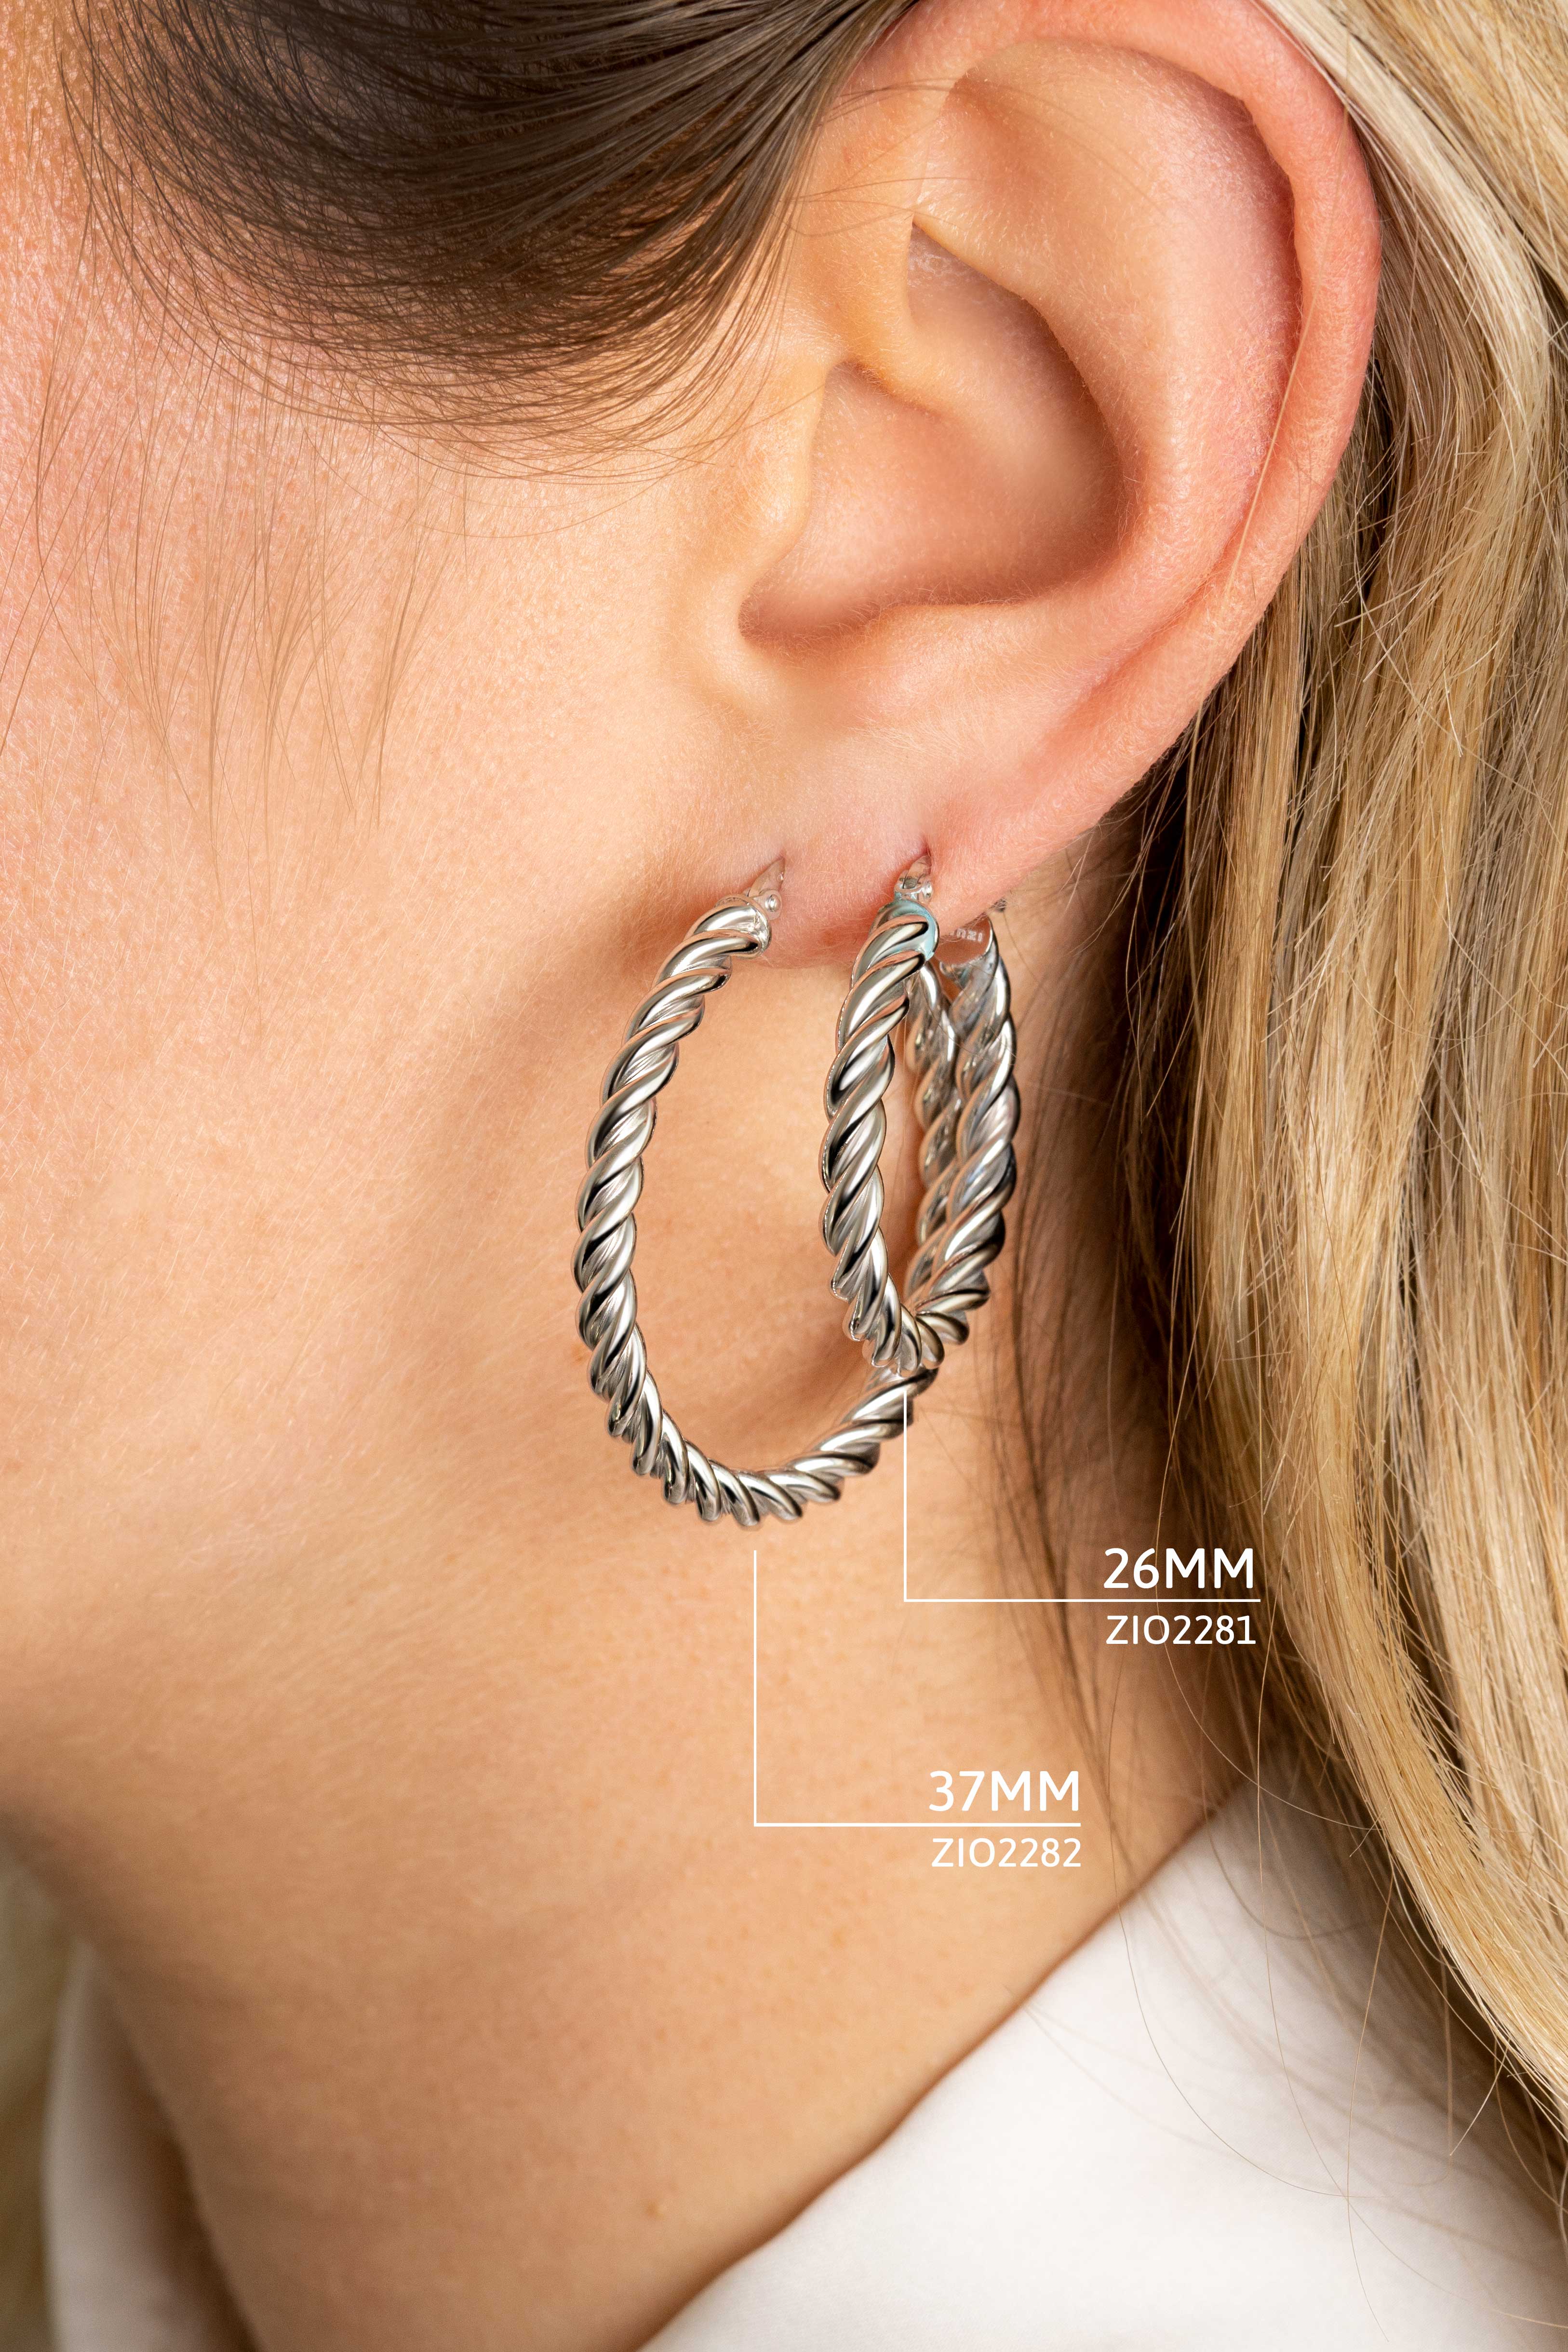 26mm ZINZI Sterling Silver Hoop Earrings with Twisted Tube width 4mm ZIO2281